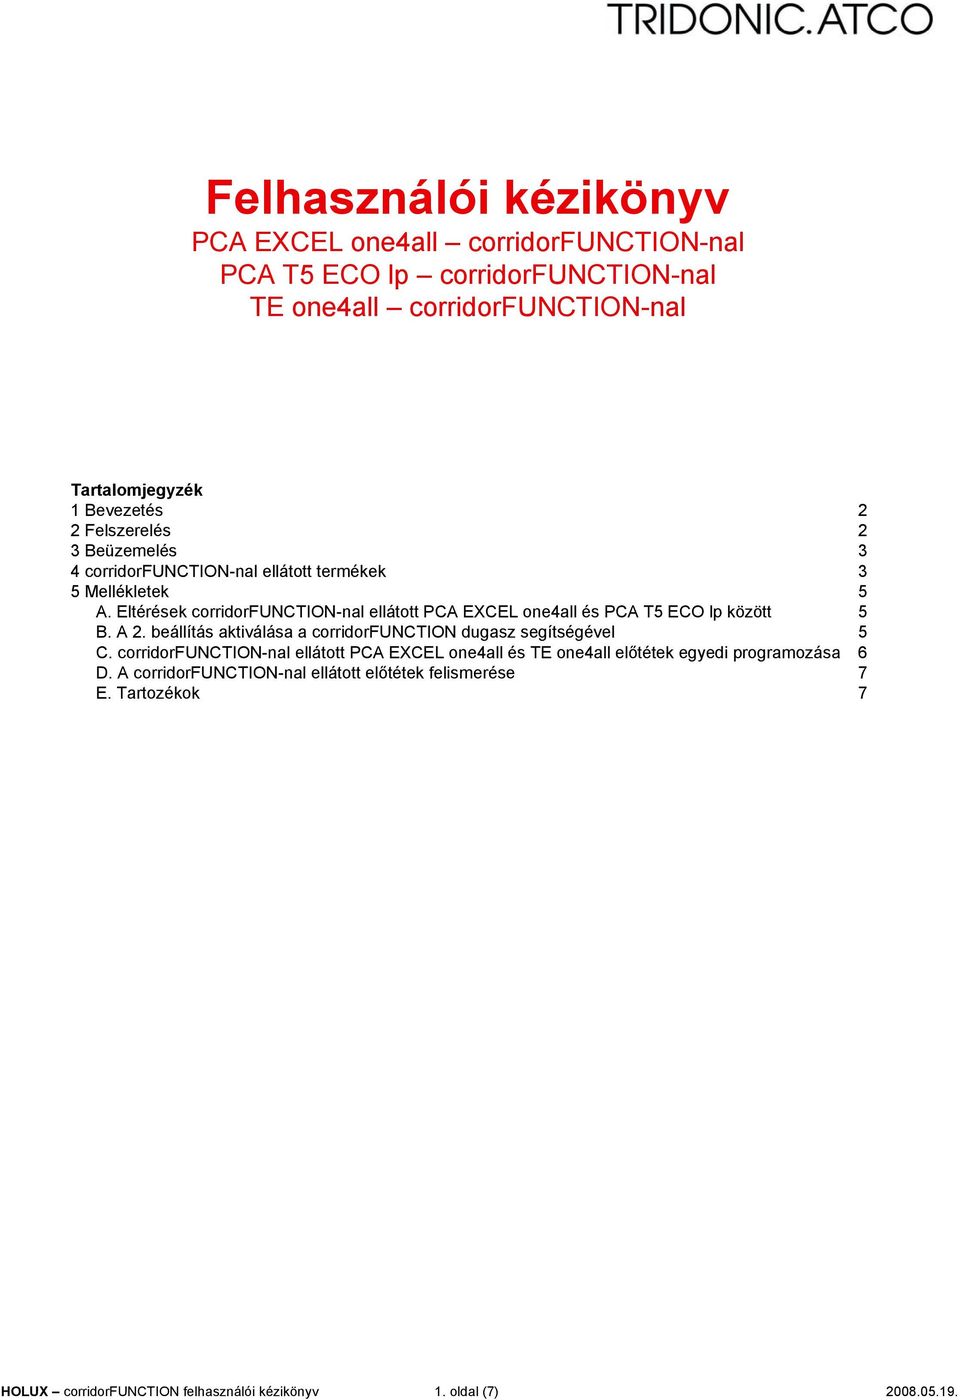 Eltérések corridorfuctio-nal ellátott PCA EXCE oneall és PCA T5 ECO lp között 5 B. A 2.